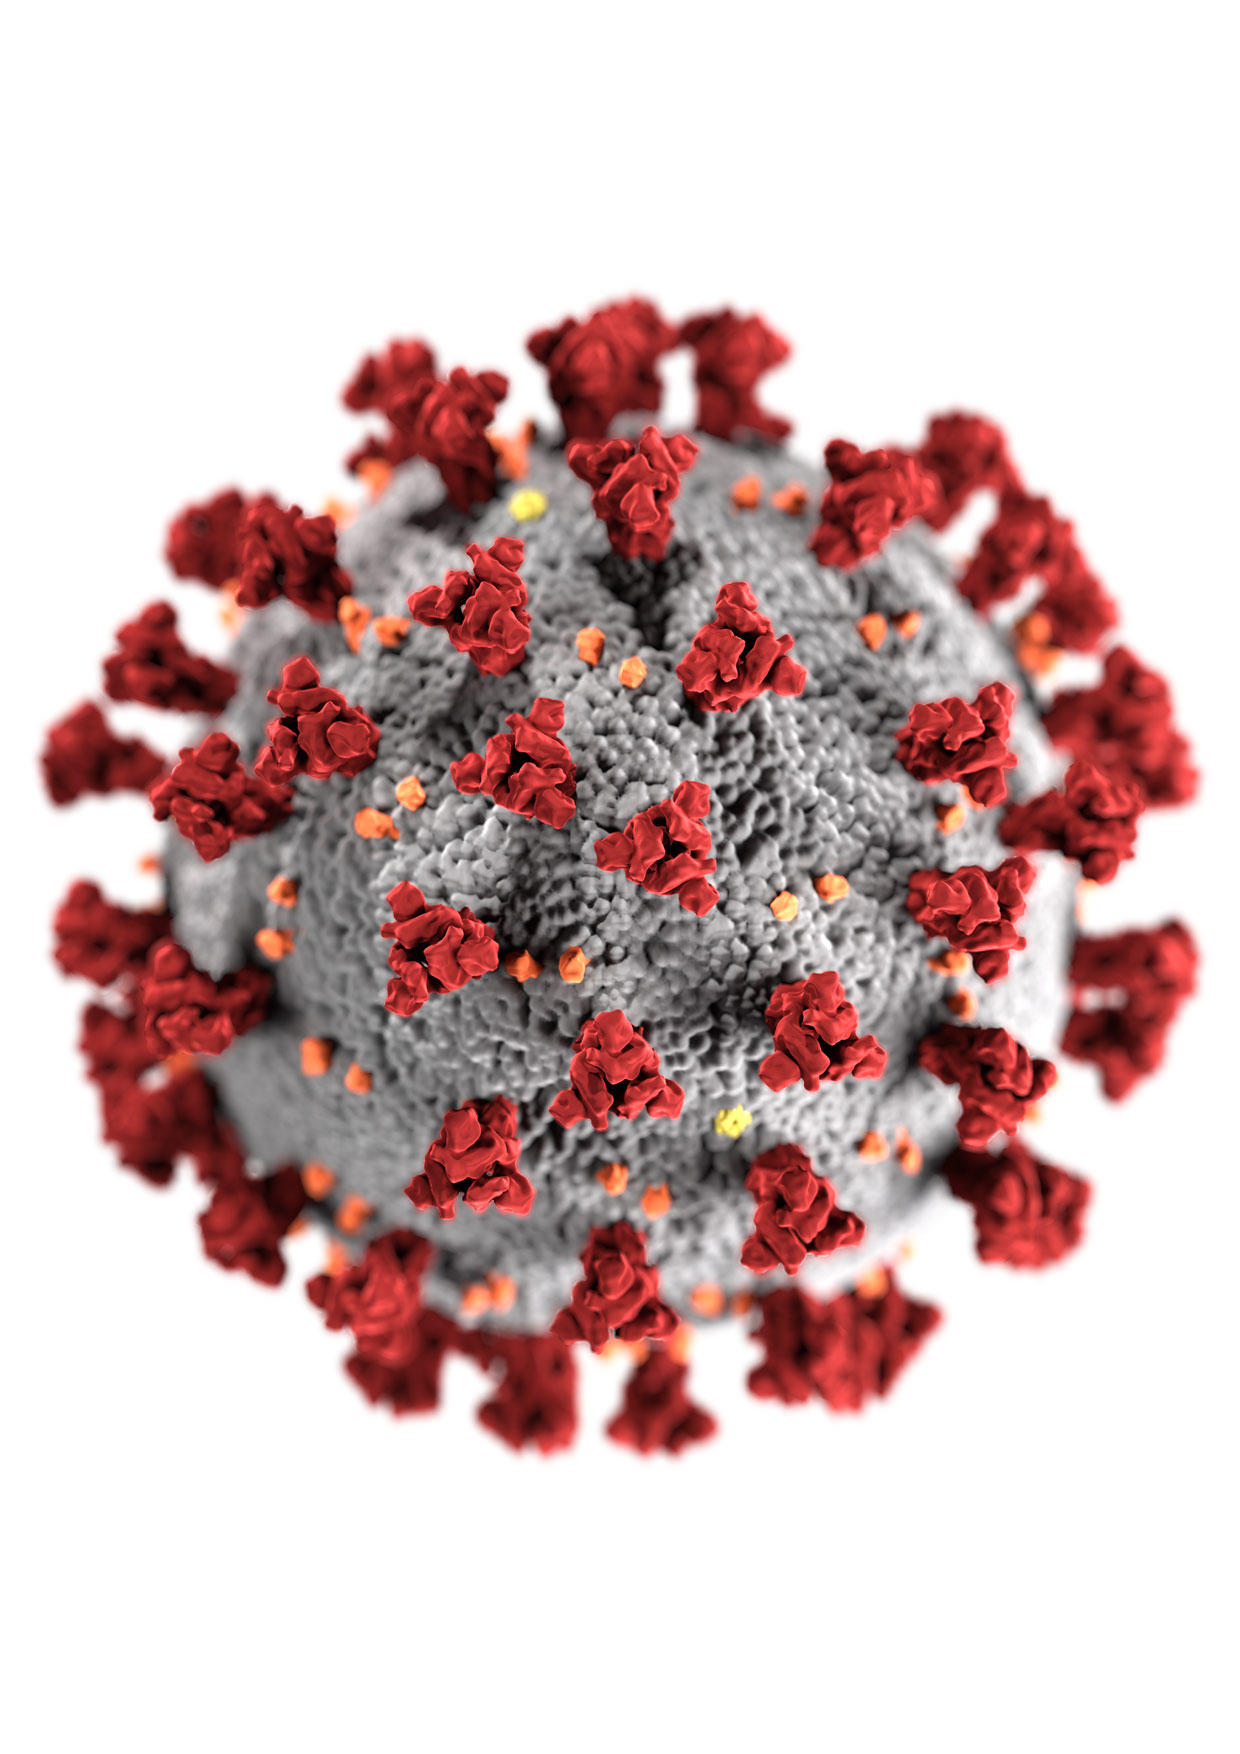 Imagen coronavirus